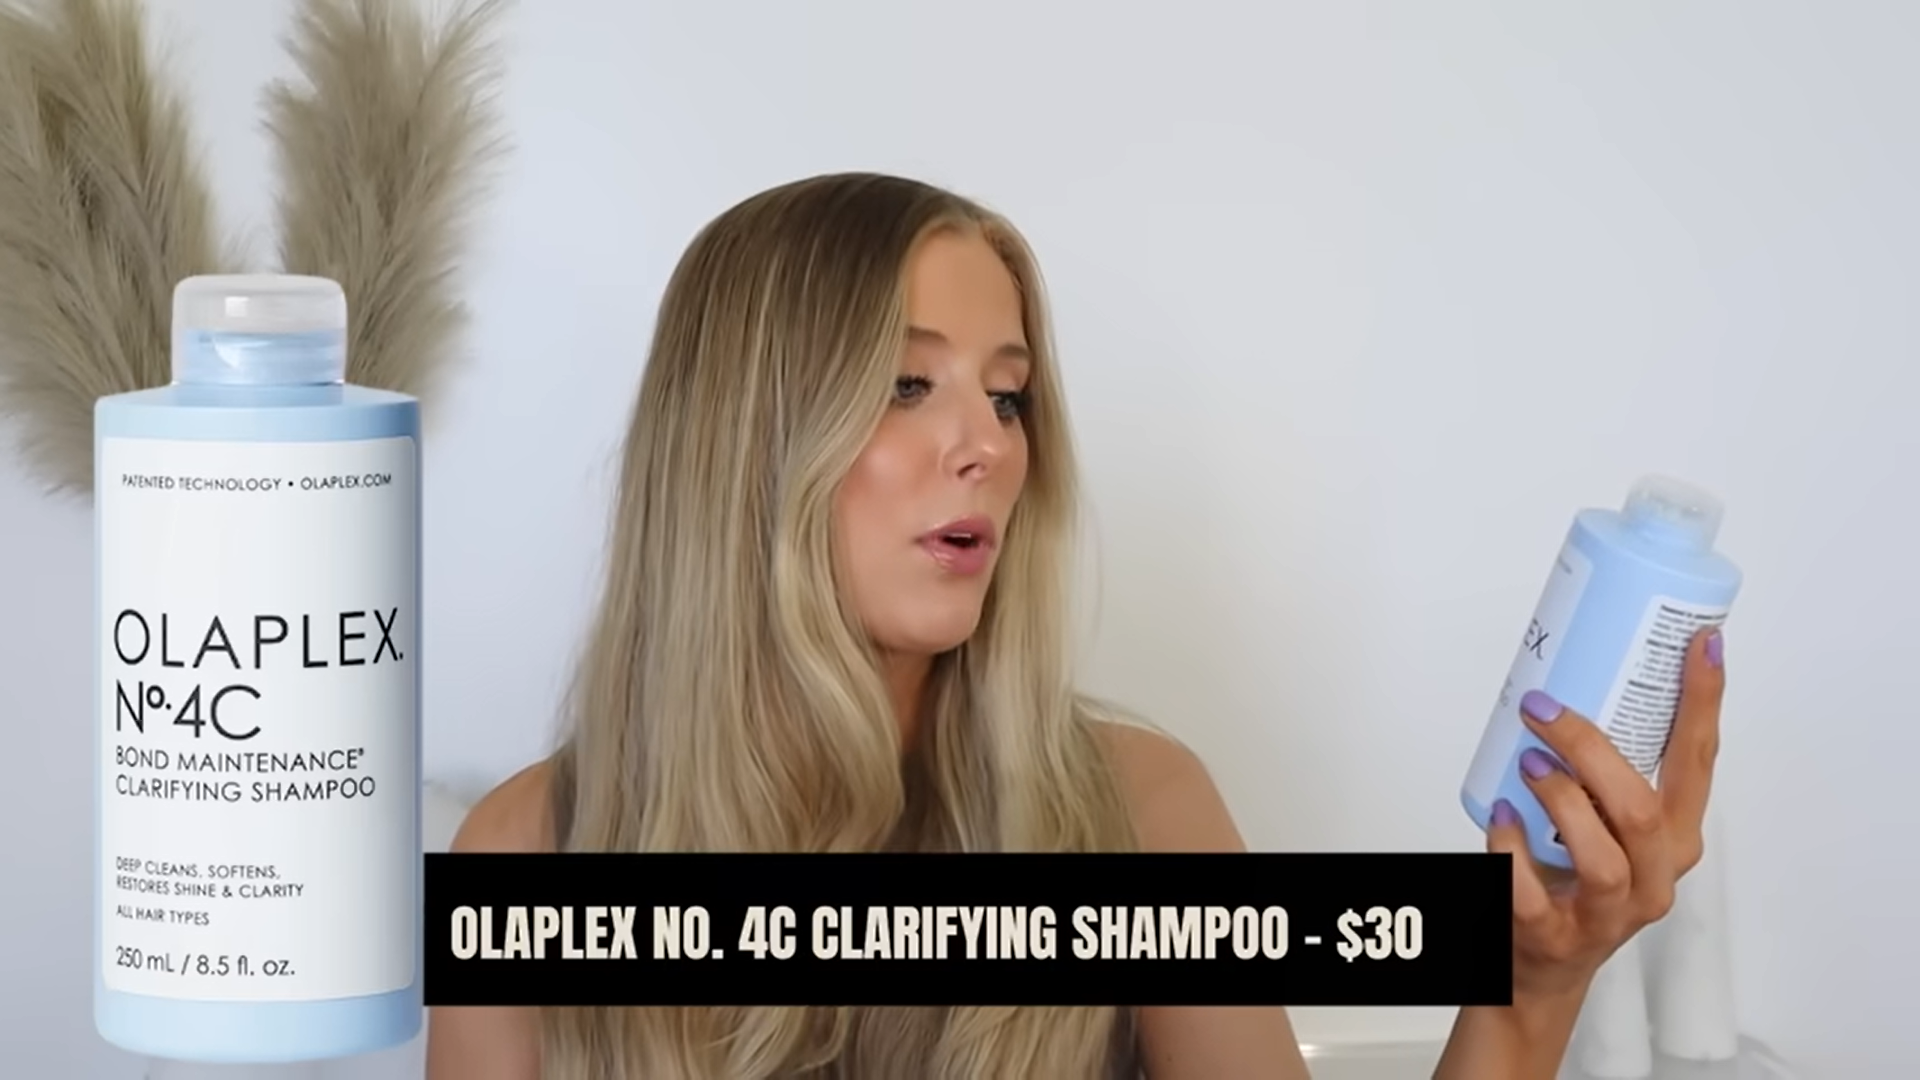 I Tried The Olaplex No. 4C Clarifying Shampoo